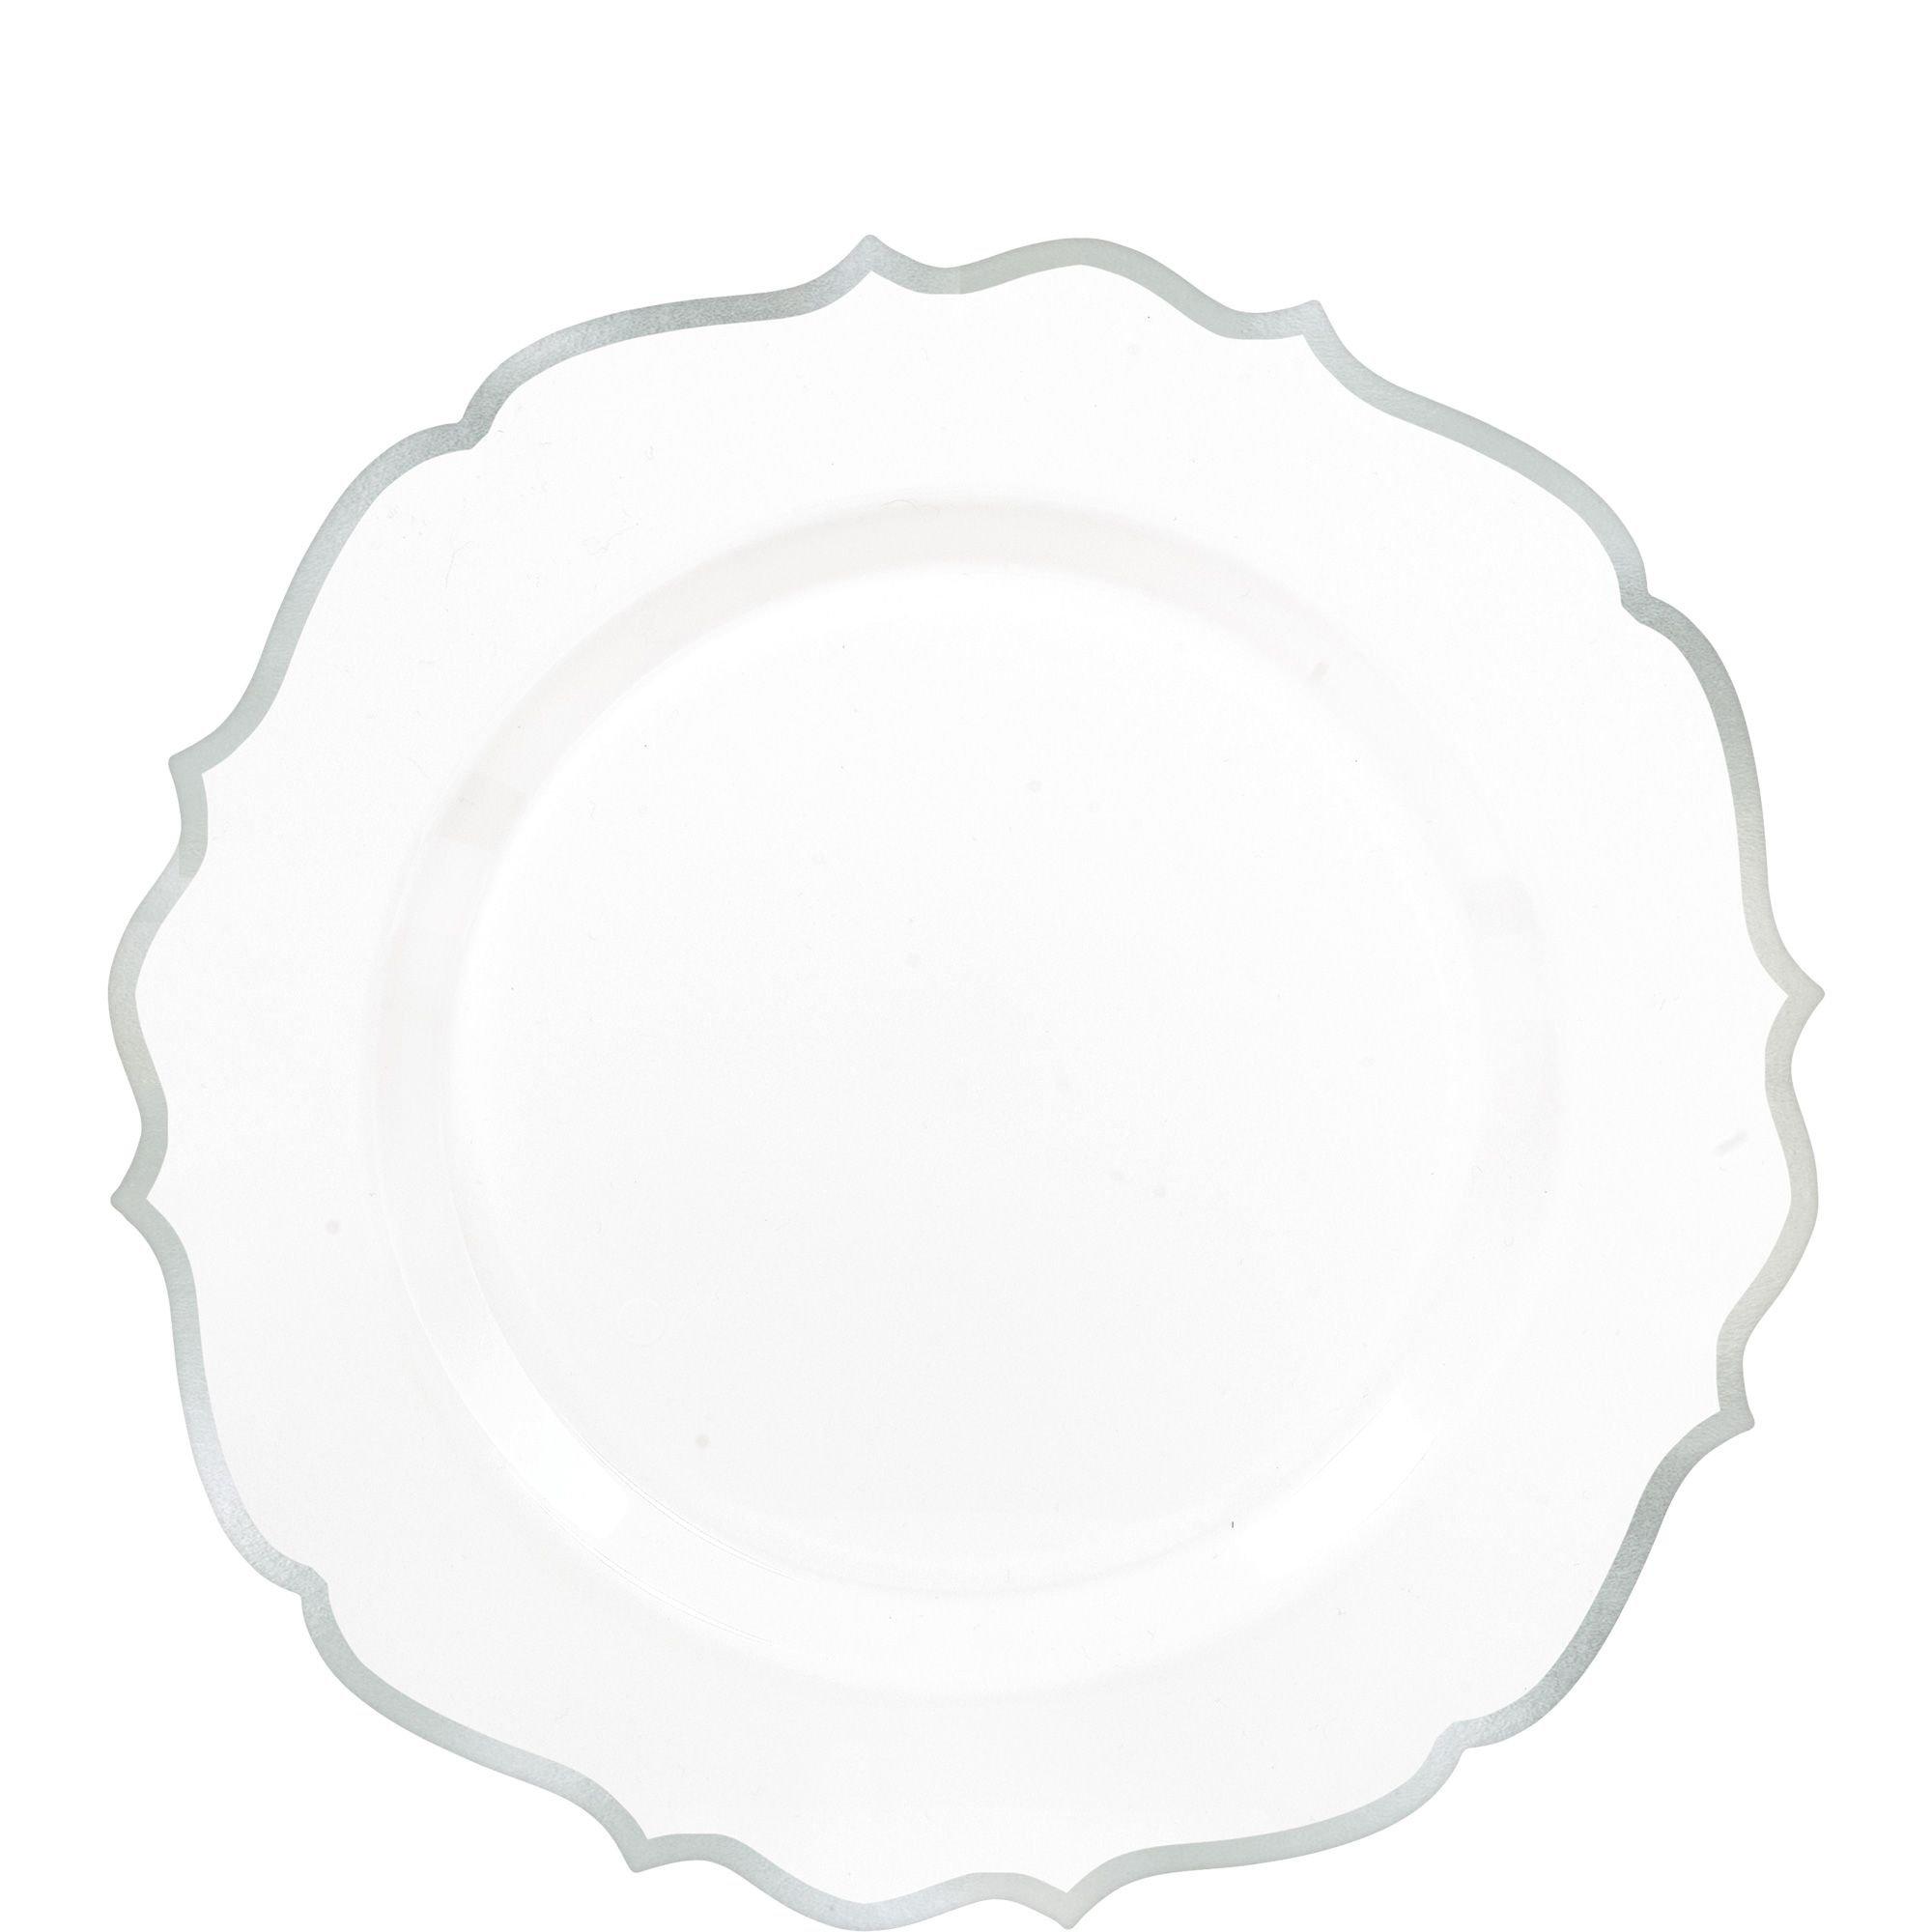 Ornate Premium Plastic Dessert Plates 20ct